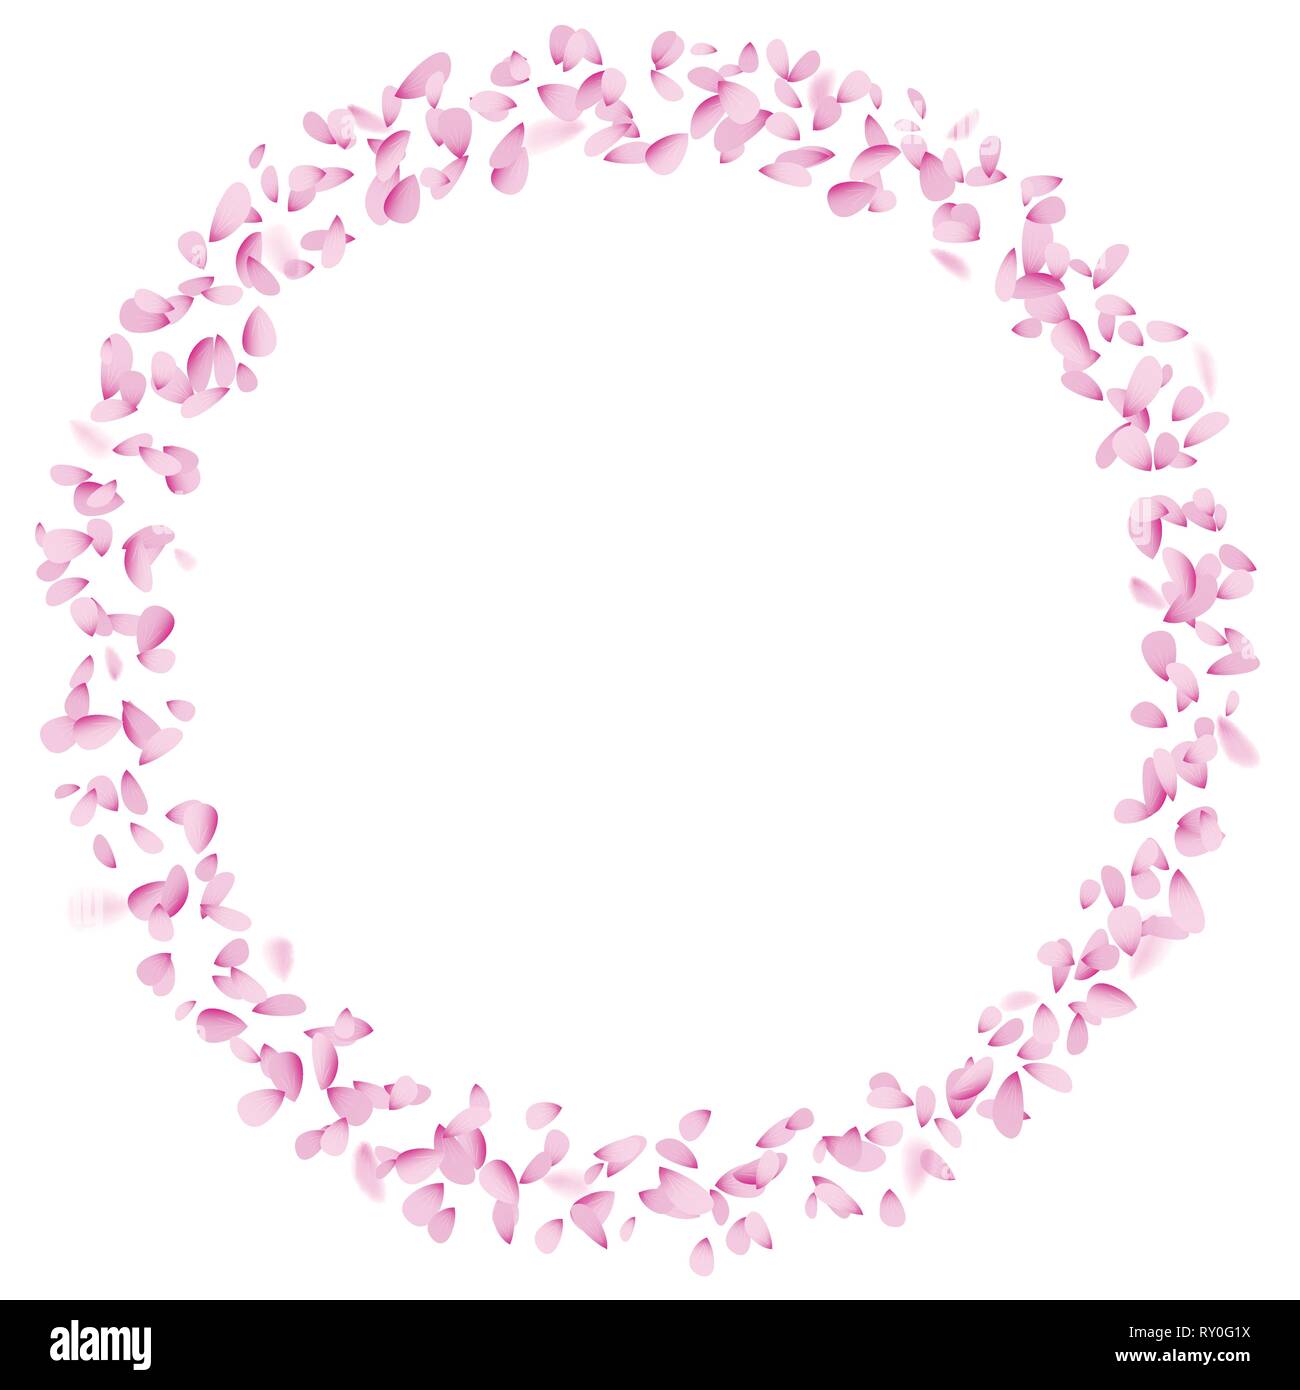 Blütenblatt Kreis Dekorationselement auf weißem Hintergrund isoliert. Soft pink flower Teile in den Wind in runder Form. Feder Banner oder Logo Design Stock Vektor